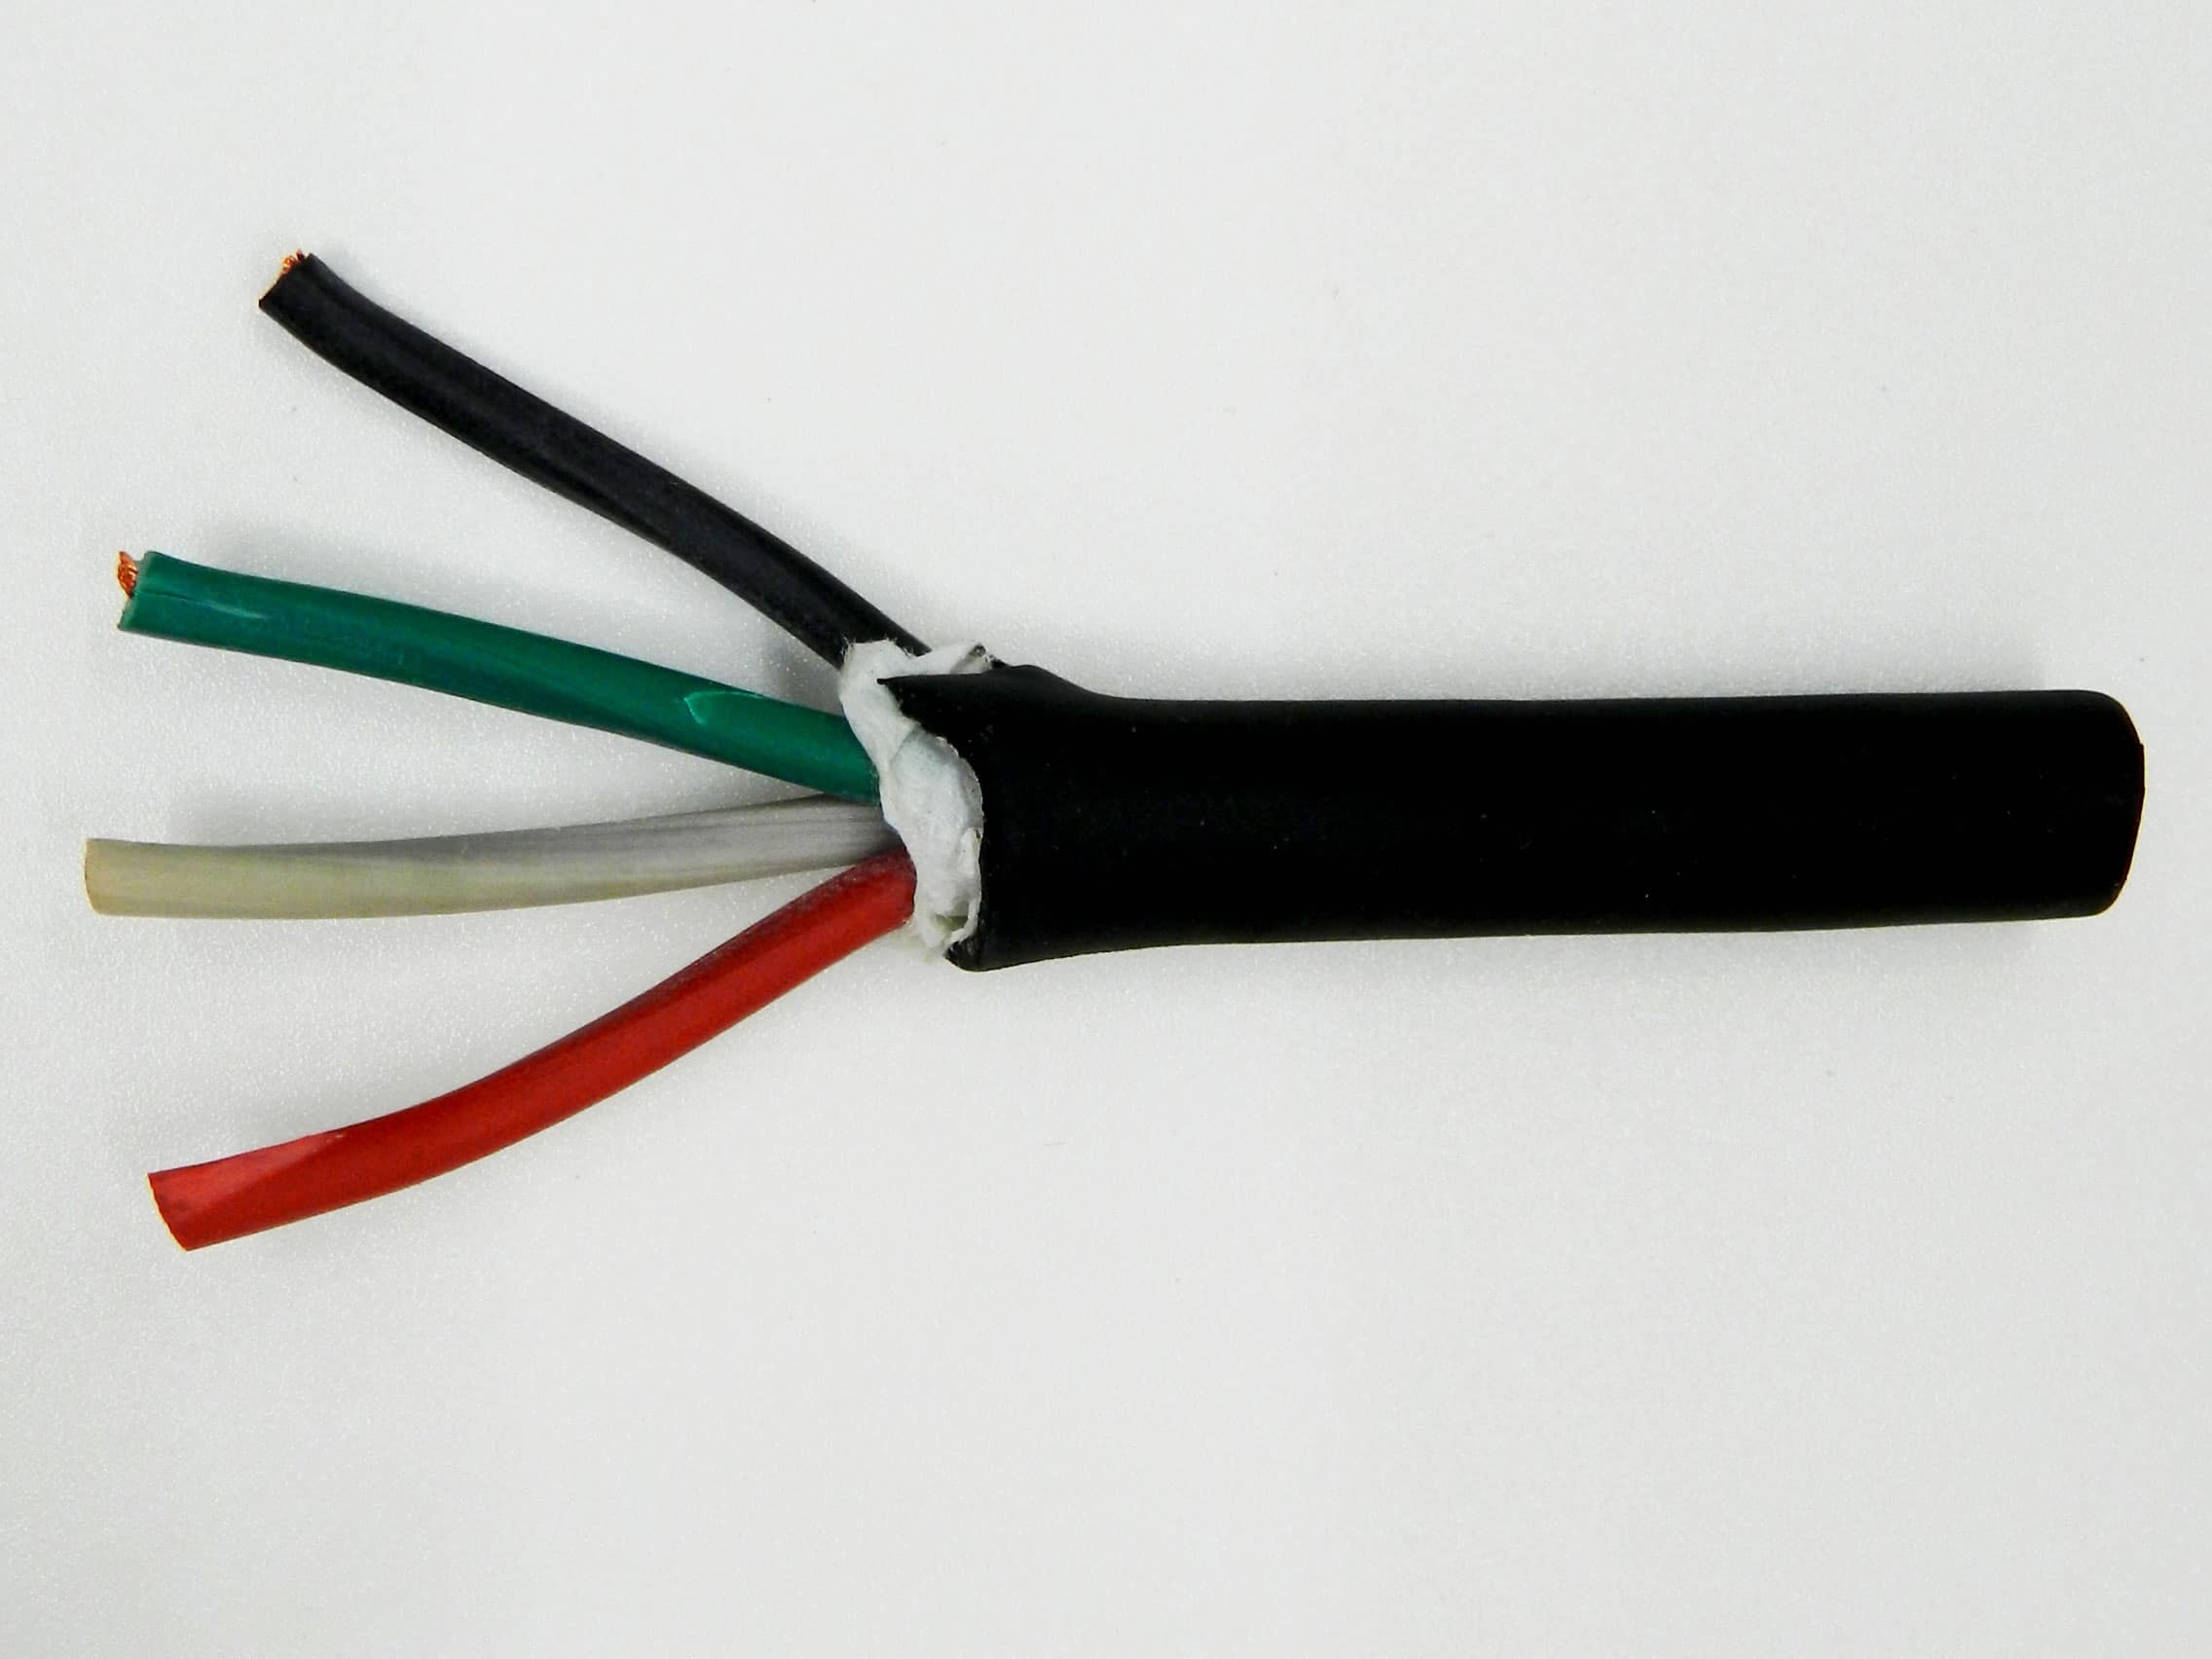 50 ft 18/3 SJOOW SJO SJ SJ00W Black Rubber Cord Outdoor Flexible Wire/Cable 